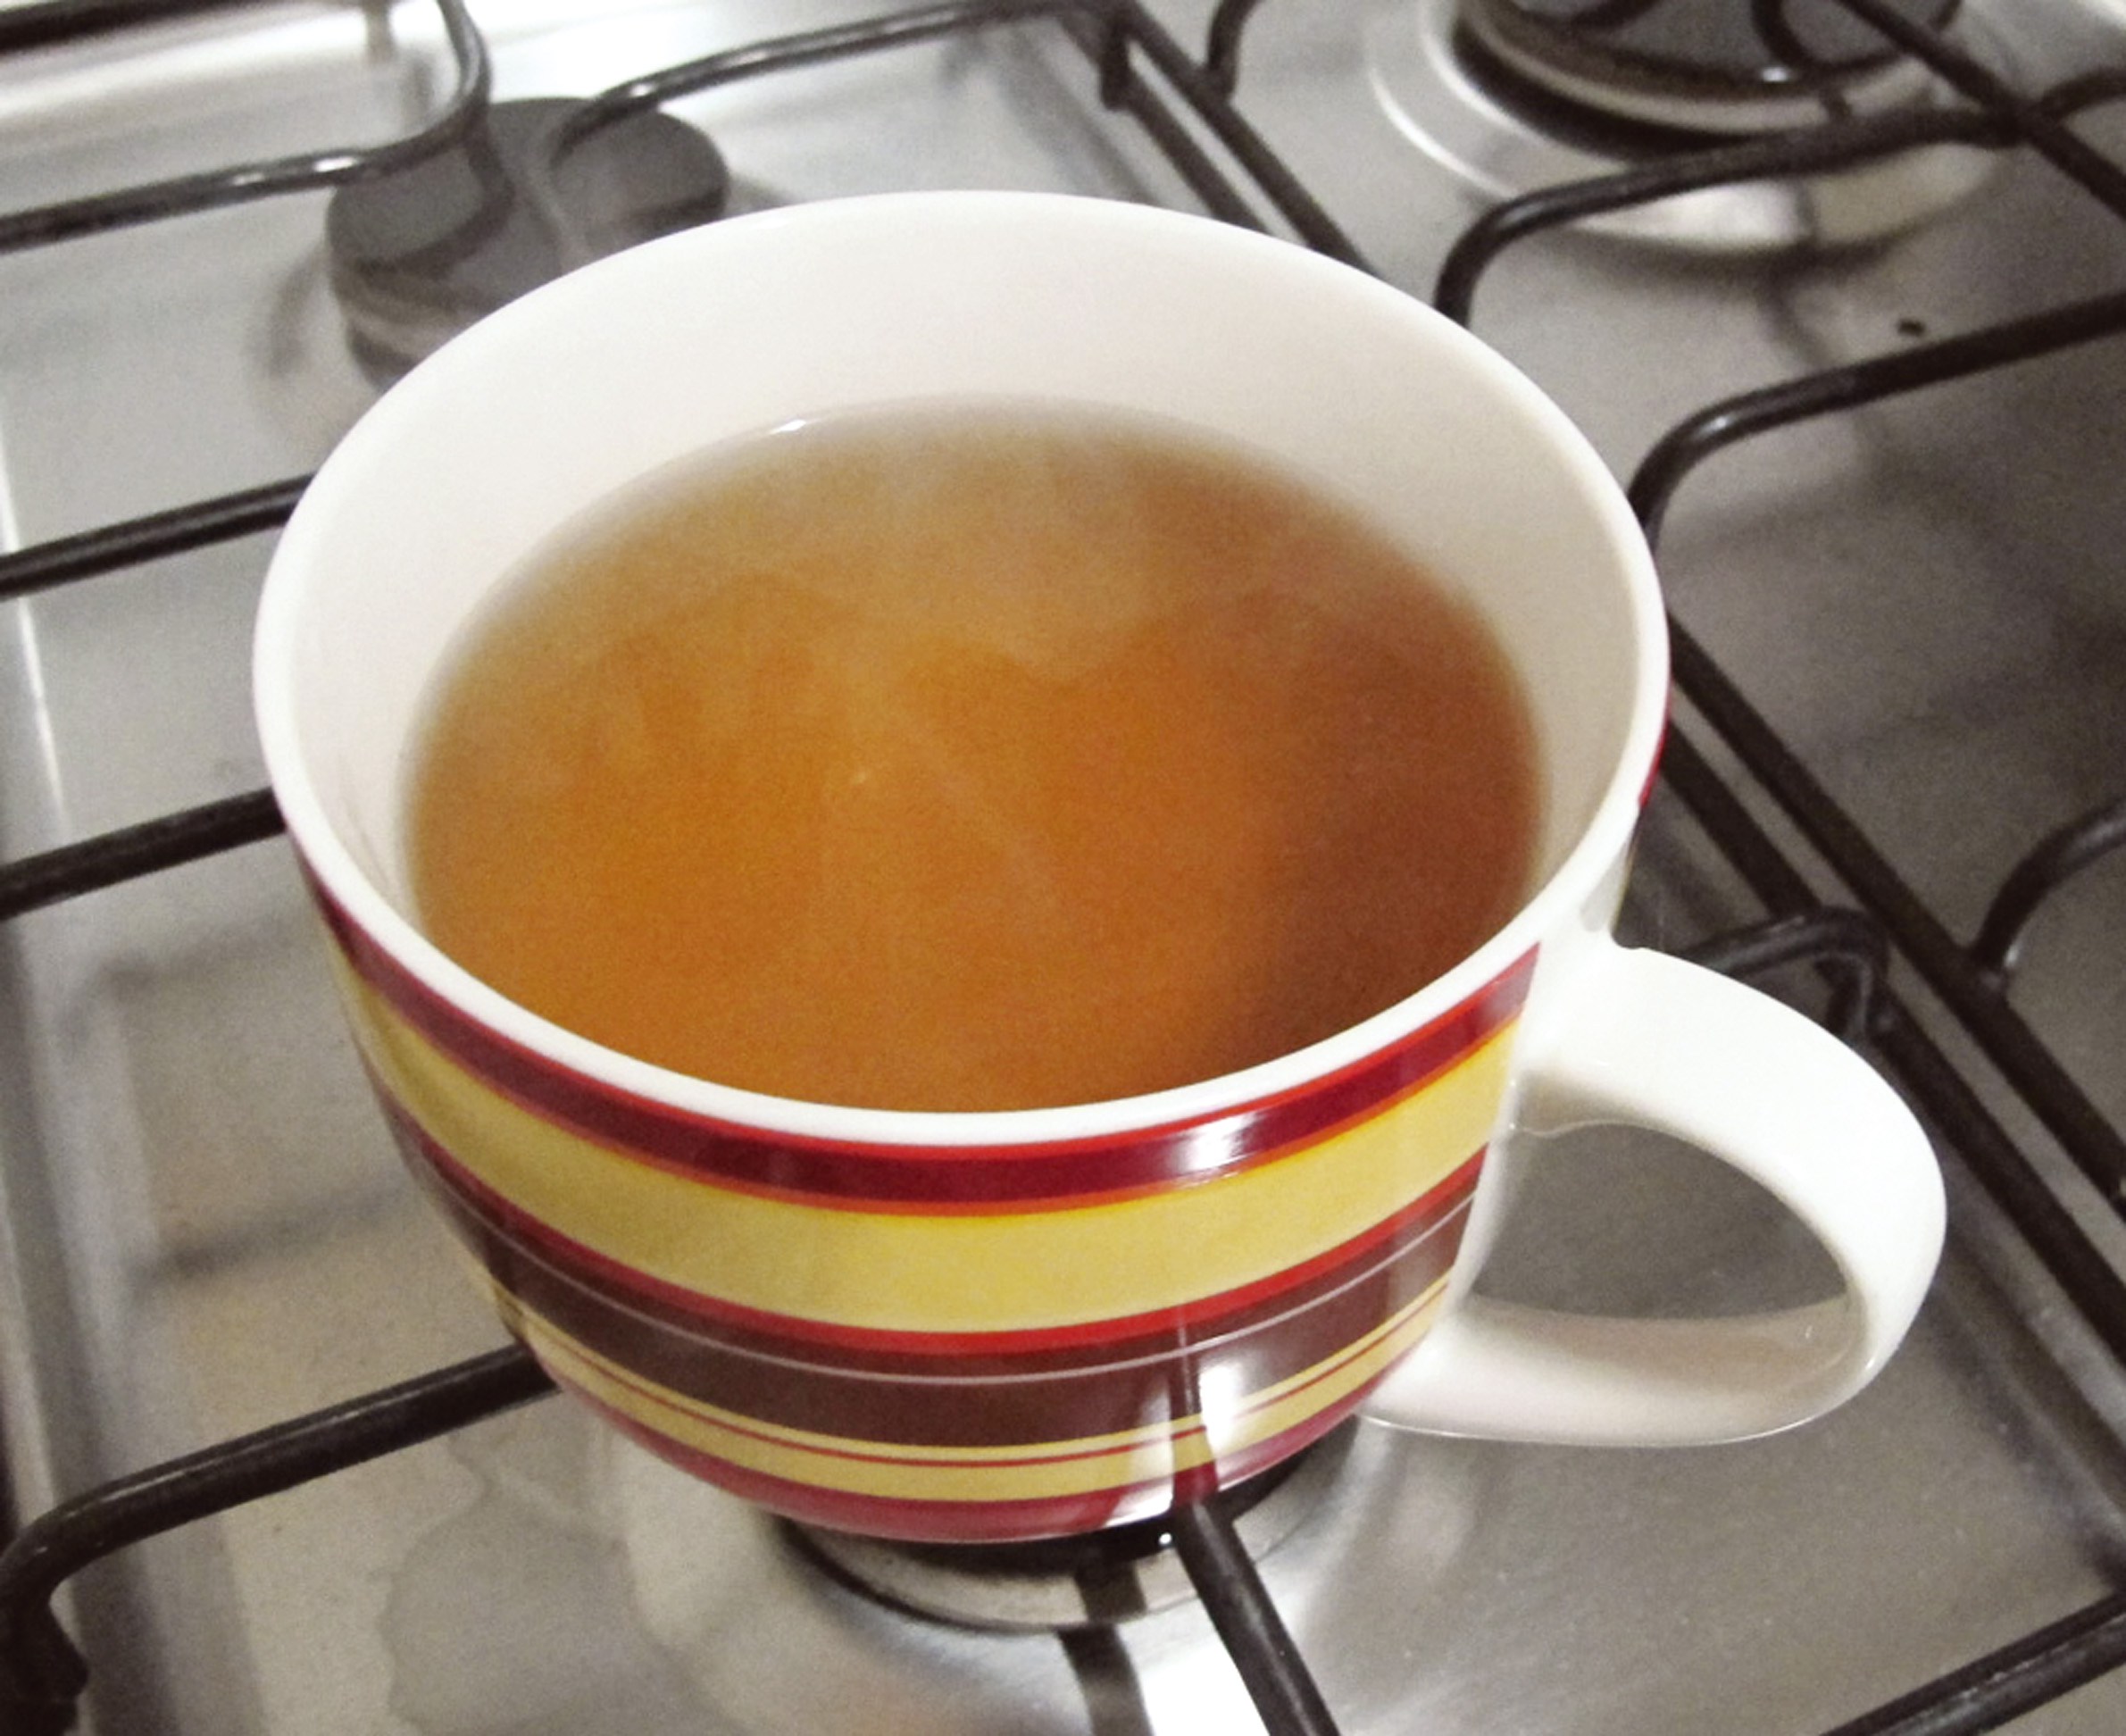 23:45 - Terminei o dia com um chá de ervas, para dar um relax